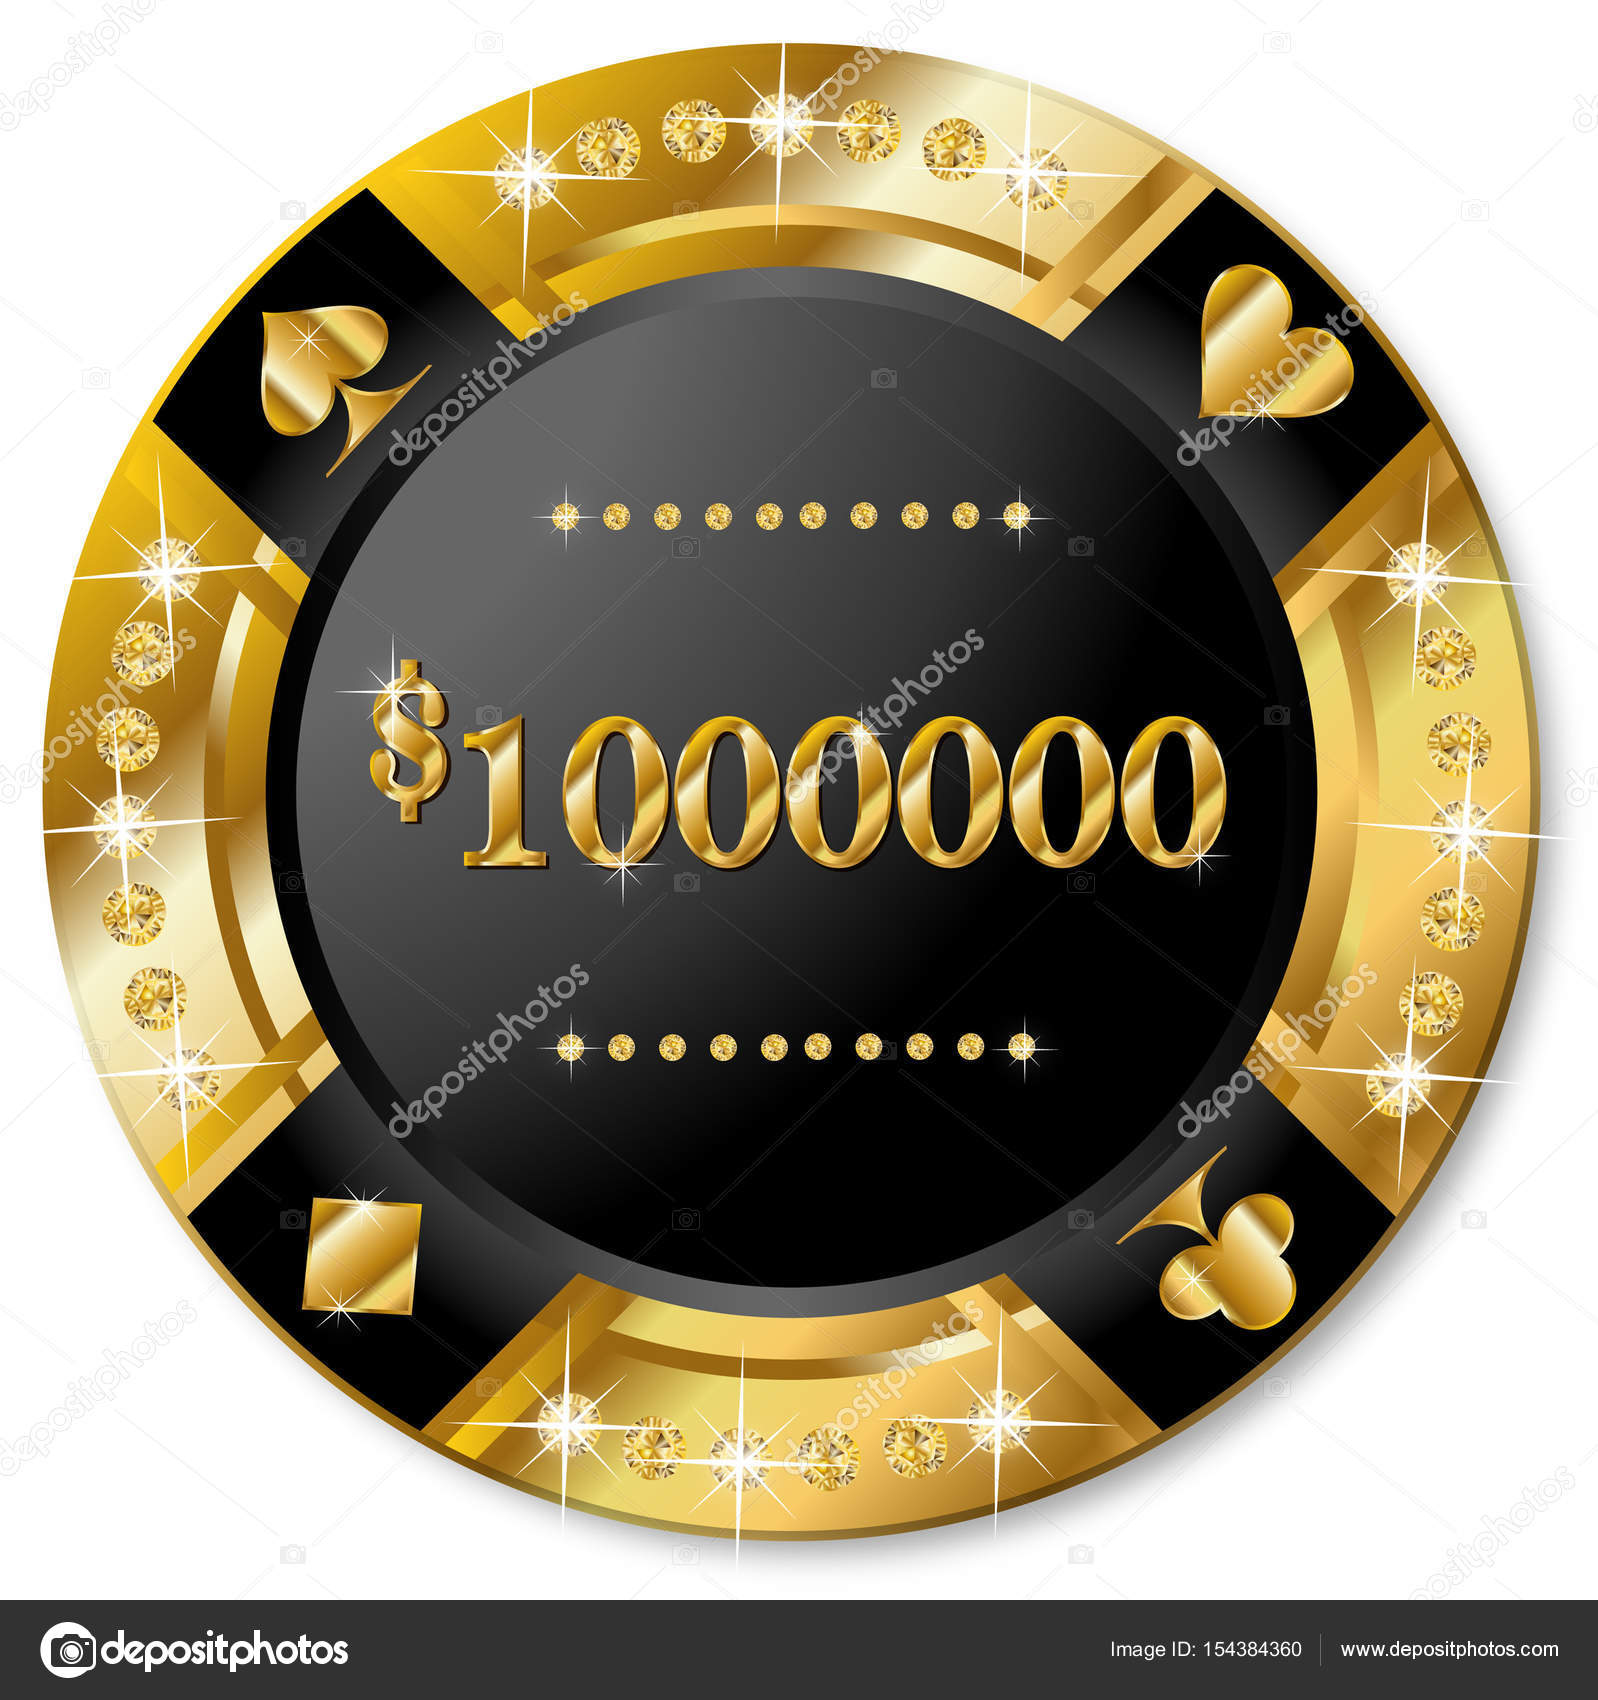 Risultati immagini per black chip poker 1000000